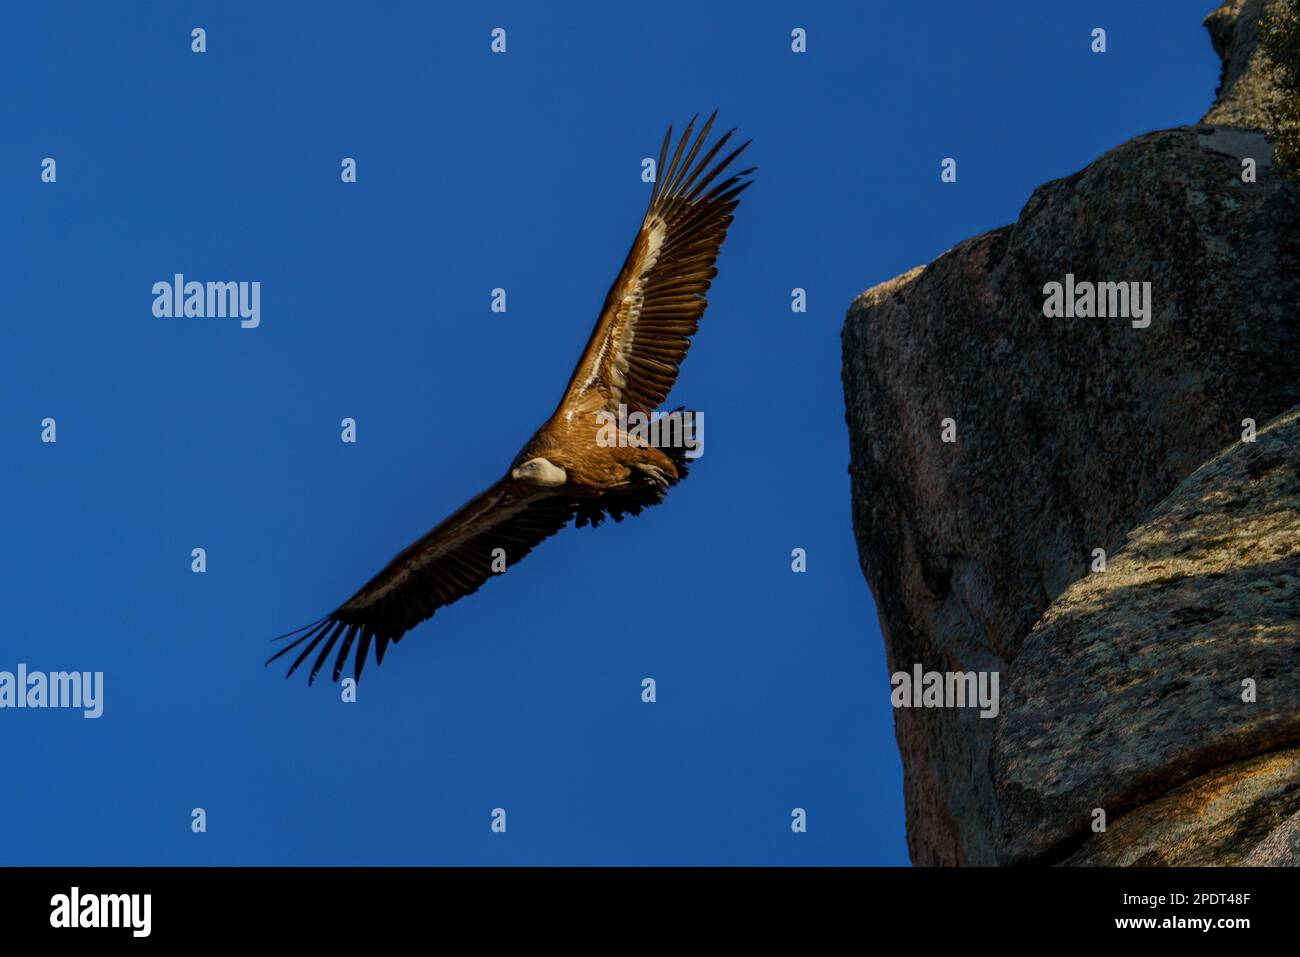 Avvoltoio Griffon che vola con ali aperte accanto a una montagna rocciosa Foto Stock